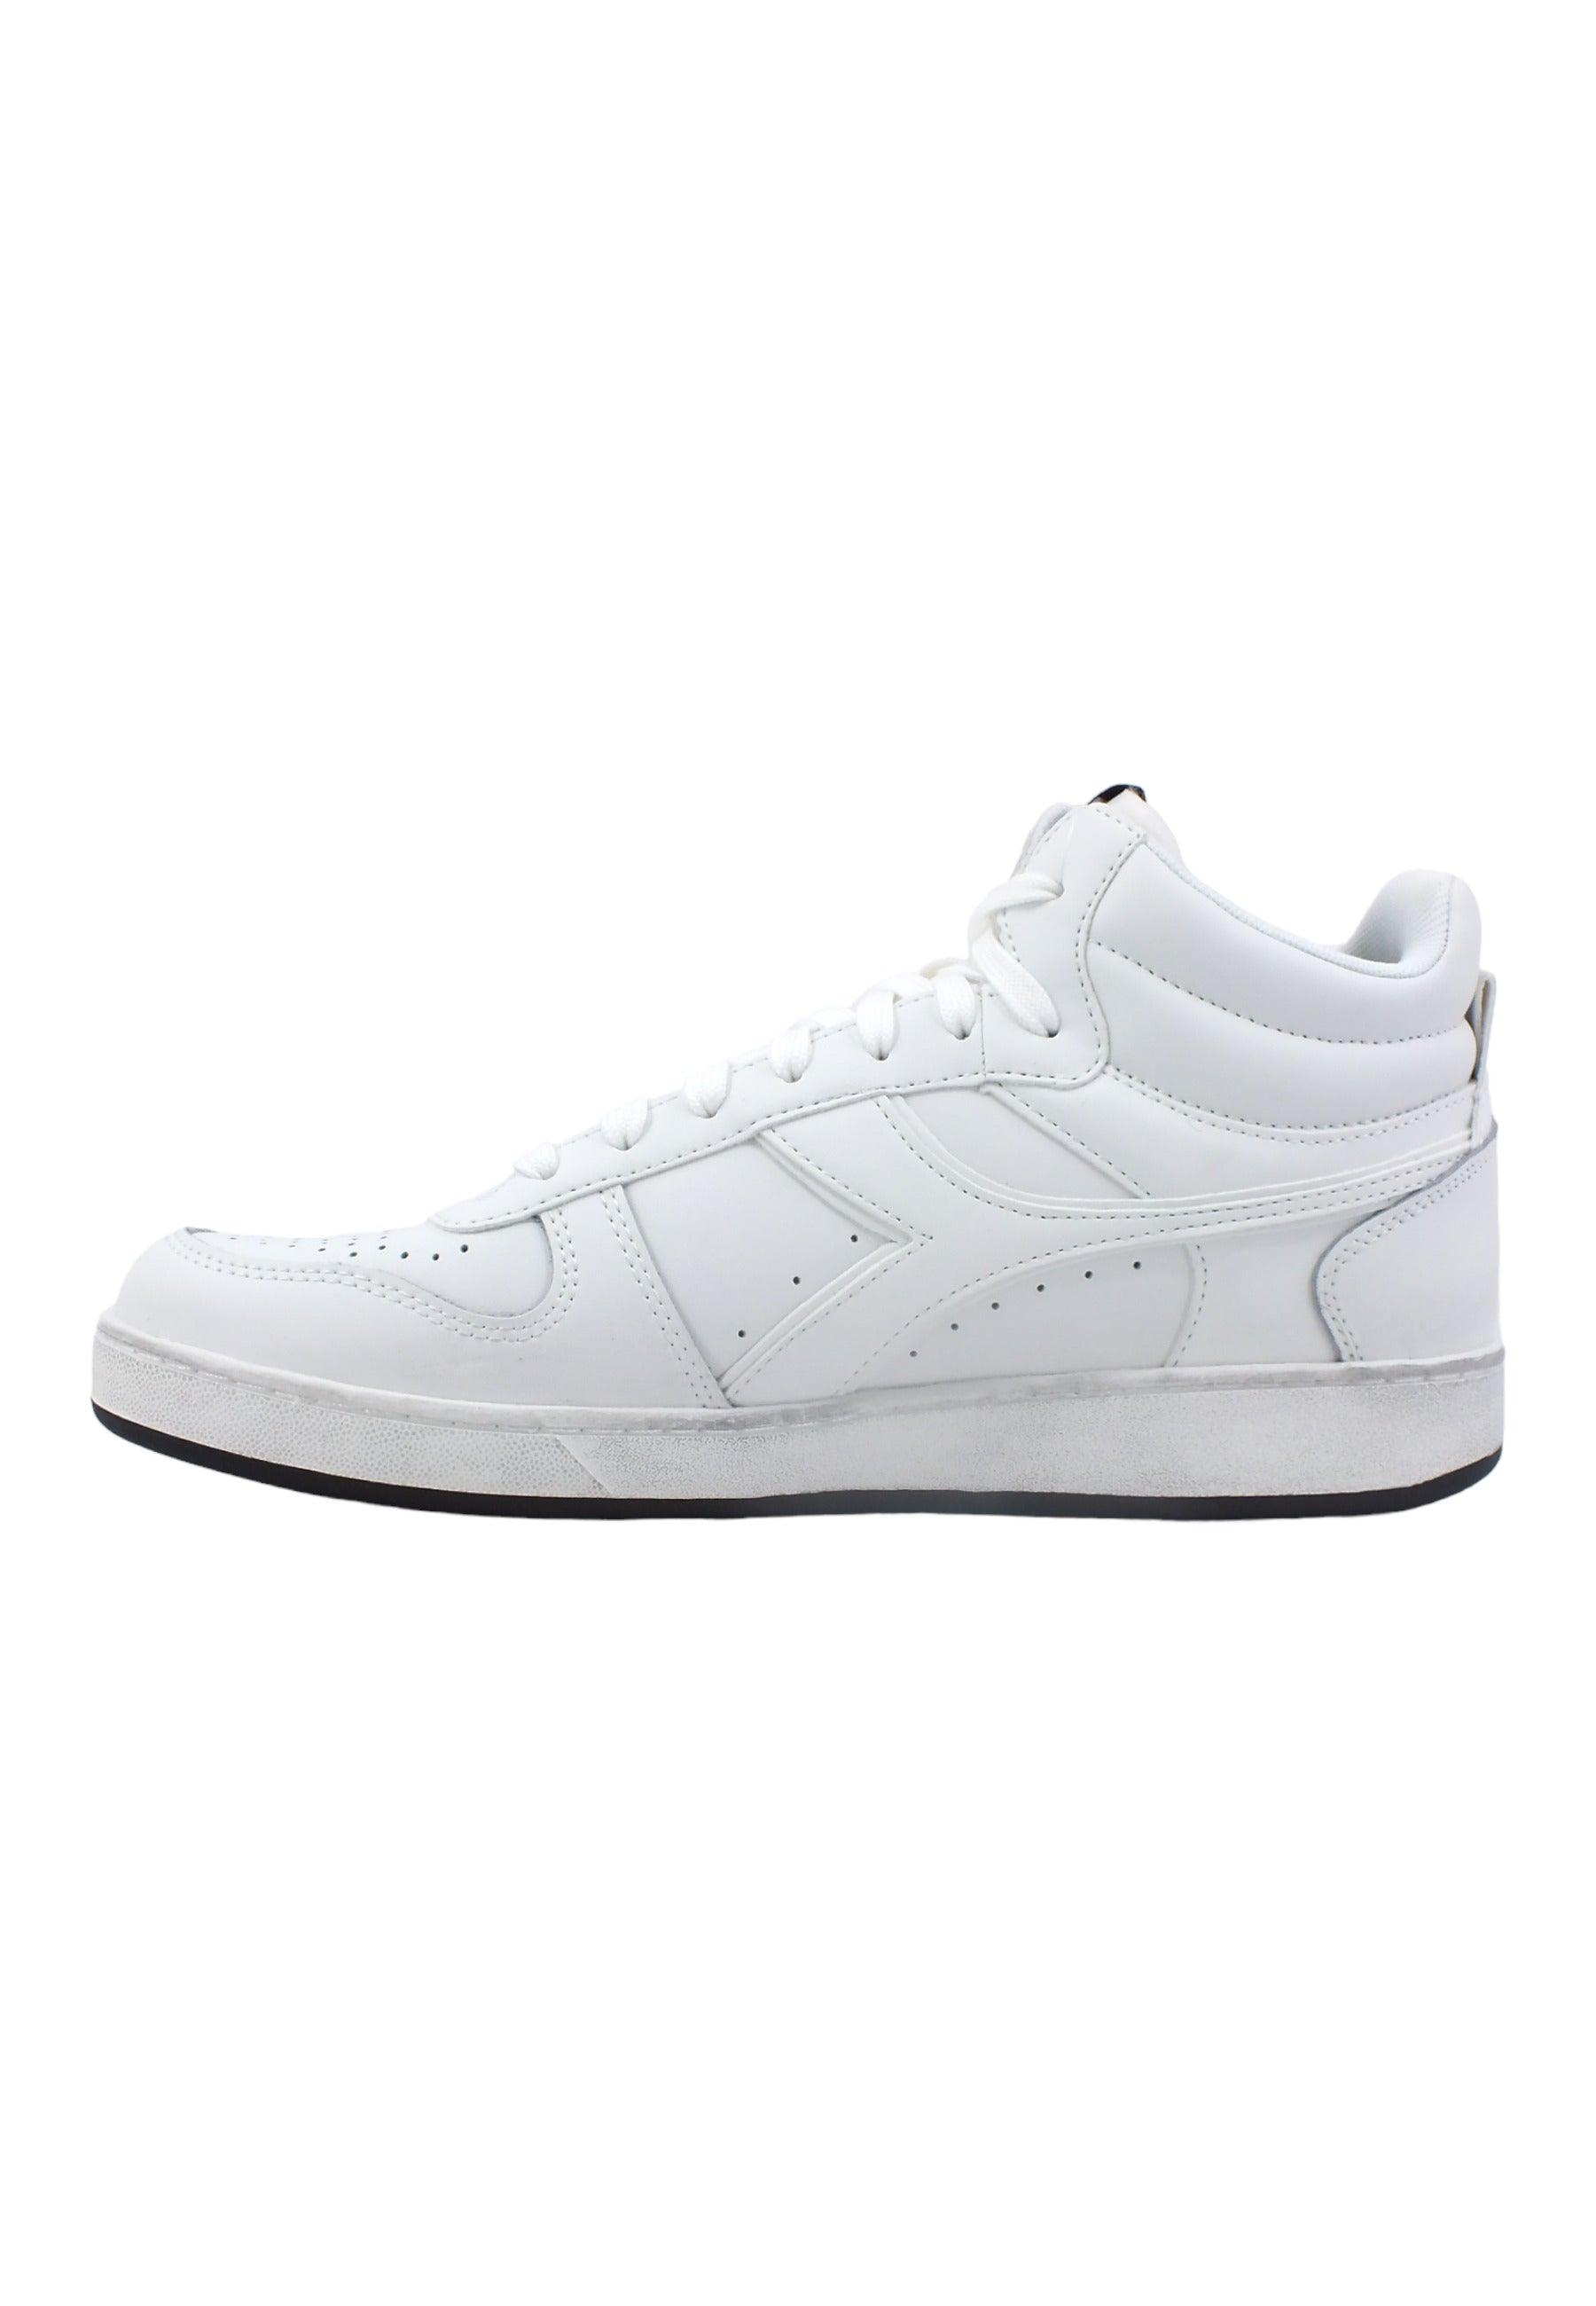 DIADORA Basket Sneaker Uomo White 501.17929701C6180 - Sandrini Calzature e Abbigliamento